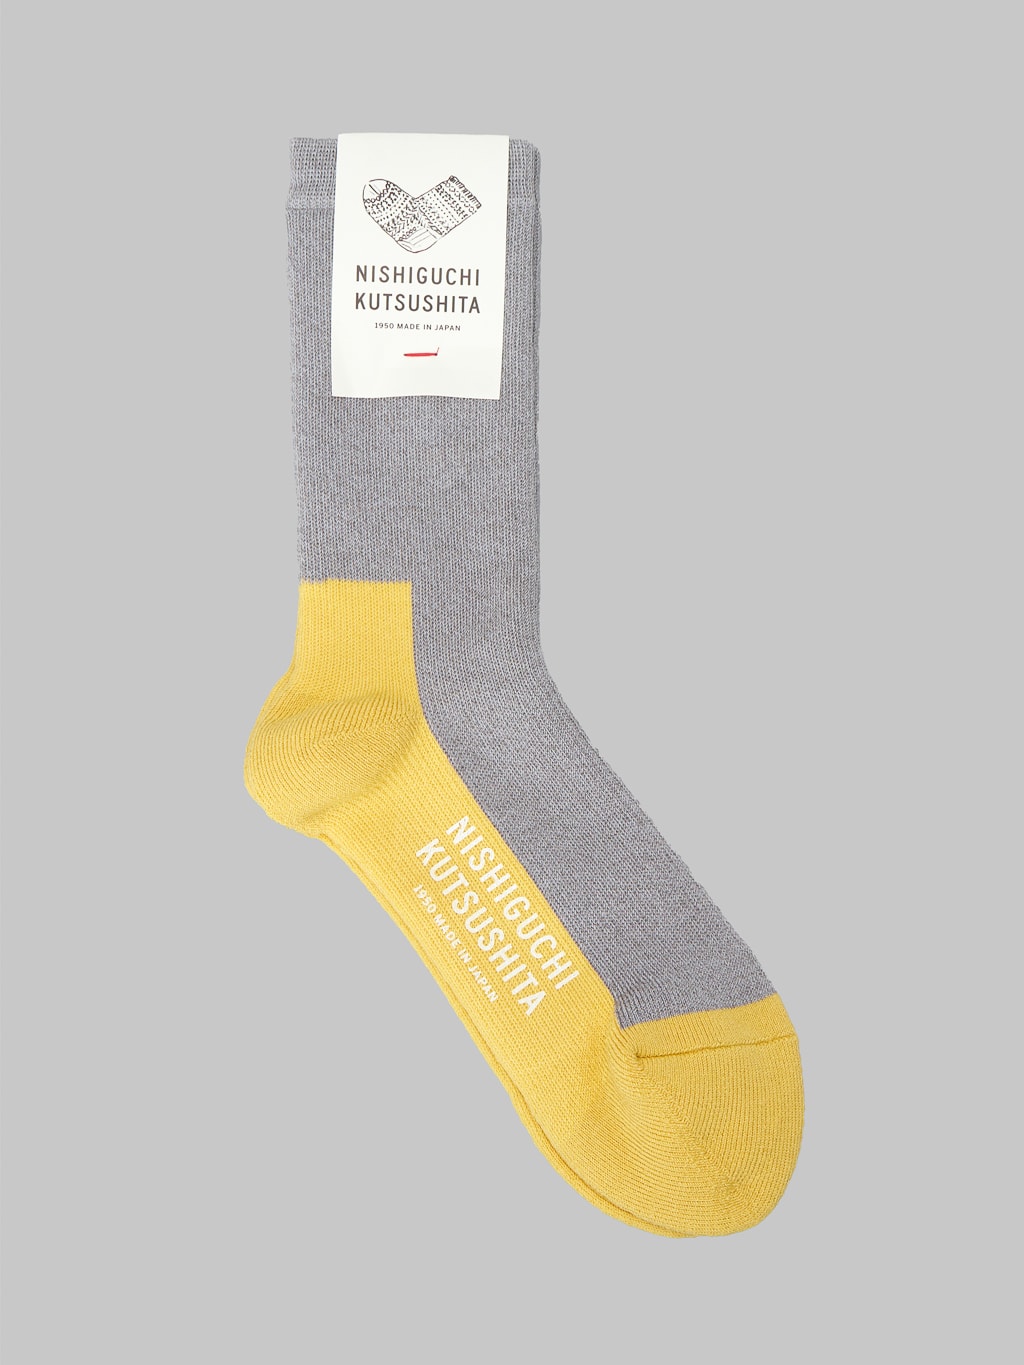 Nishiguchi Kutsushita Wool Pile Walk Socks light grey warm